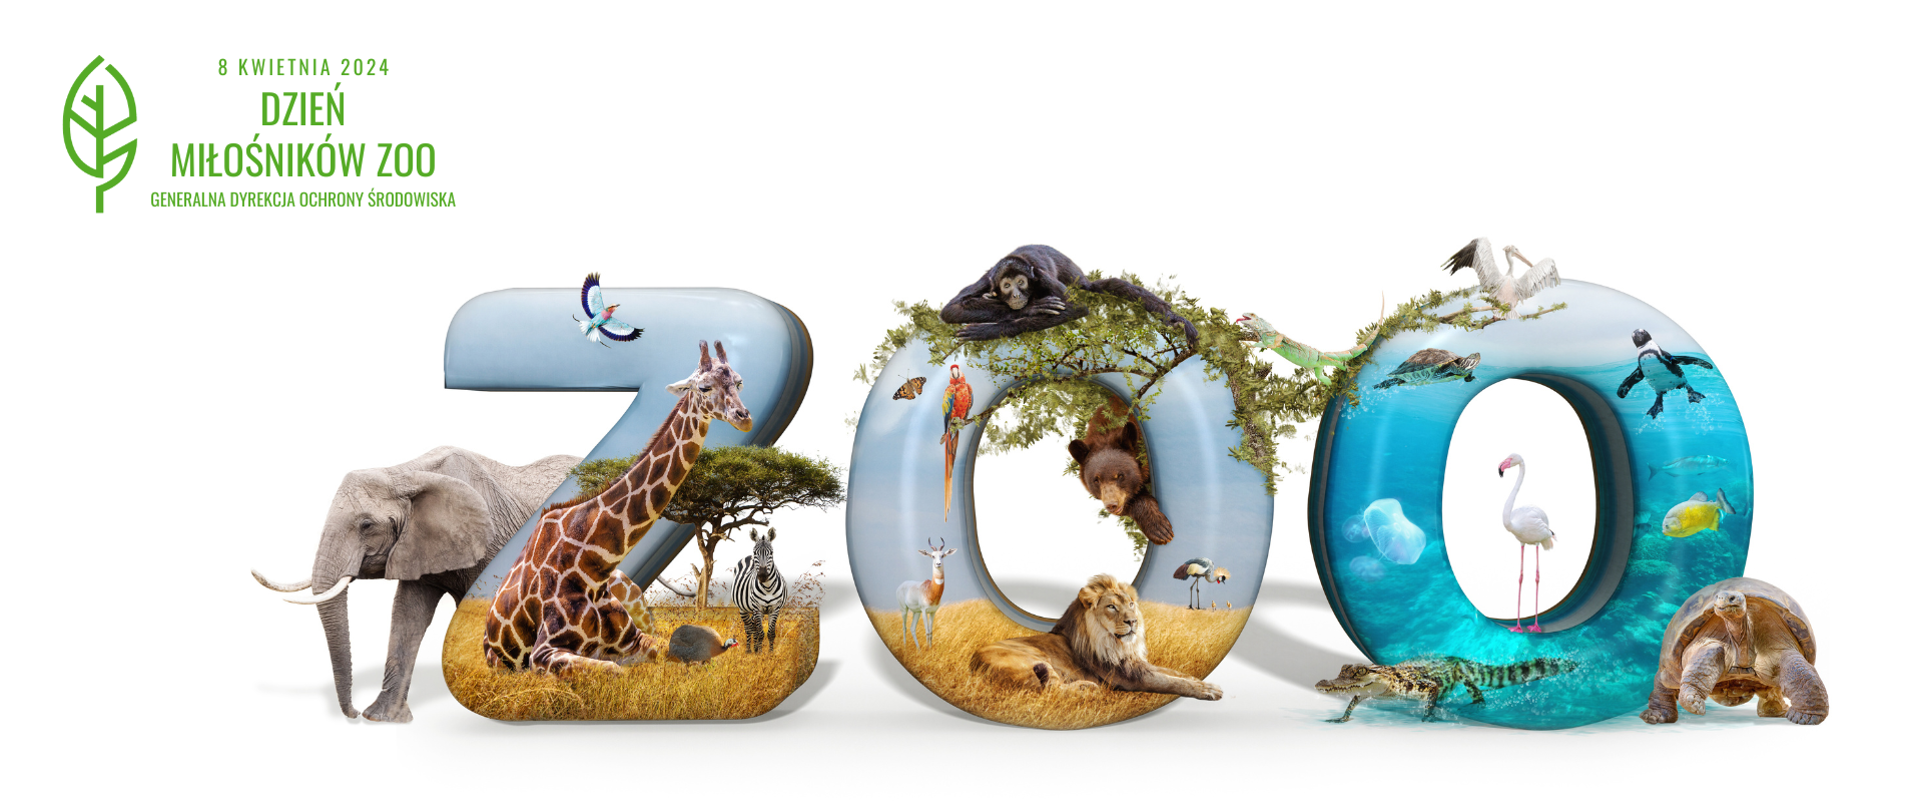 Grafika. W centralnej części napis "ZOO" z efektem 3D. Z każdej litery napisu "ZOO" jakby "wychodzą" egzotyczne zwierzęta, m.in.: słoń, żyrafa, zebra, lew, niedźwiedź, krokodyl, żółw a także różne ptaki, takie jak papuga, flaming czy pelikan. W lewym górnym rogu napis: "8 KWIETNIA 2024 DZIEŃ MIŁOŚNIKÓW ZOO GENERALNA DYREKCJA OCHRONY ŚRODOWISKA"